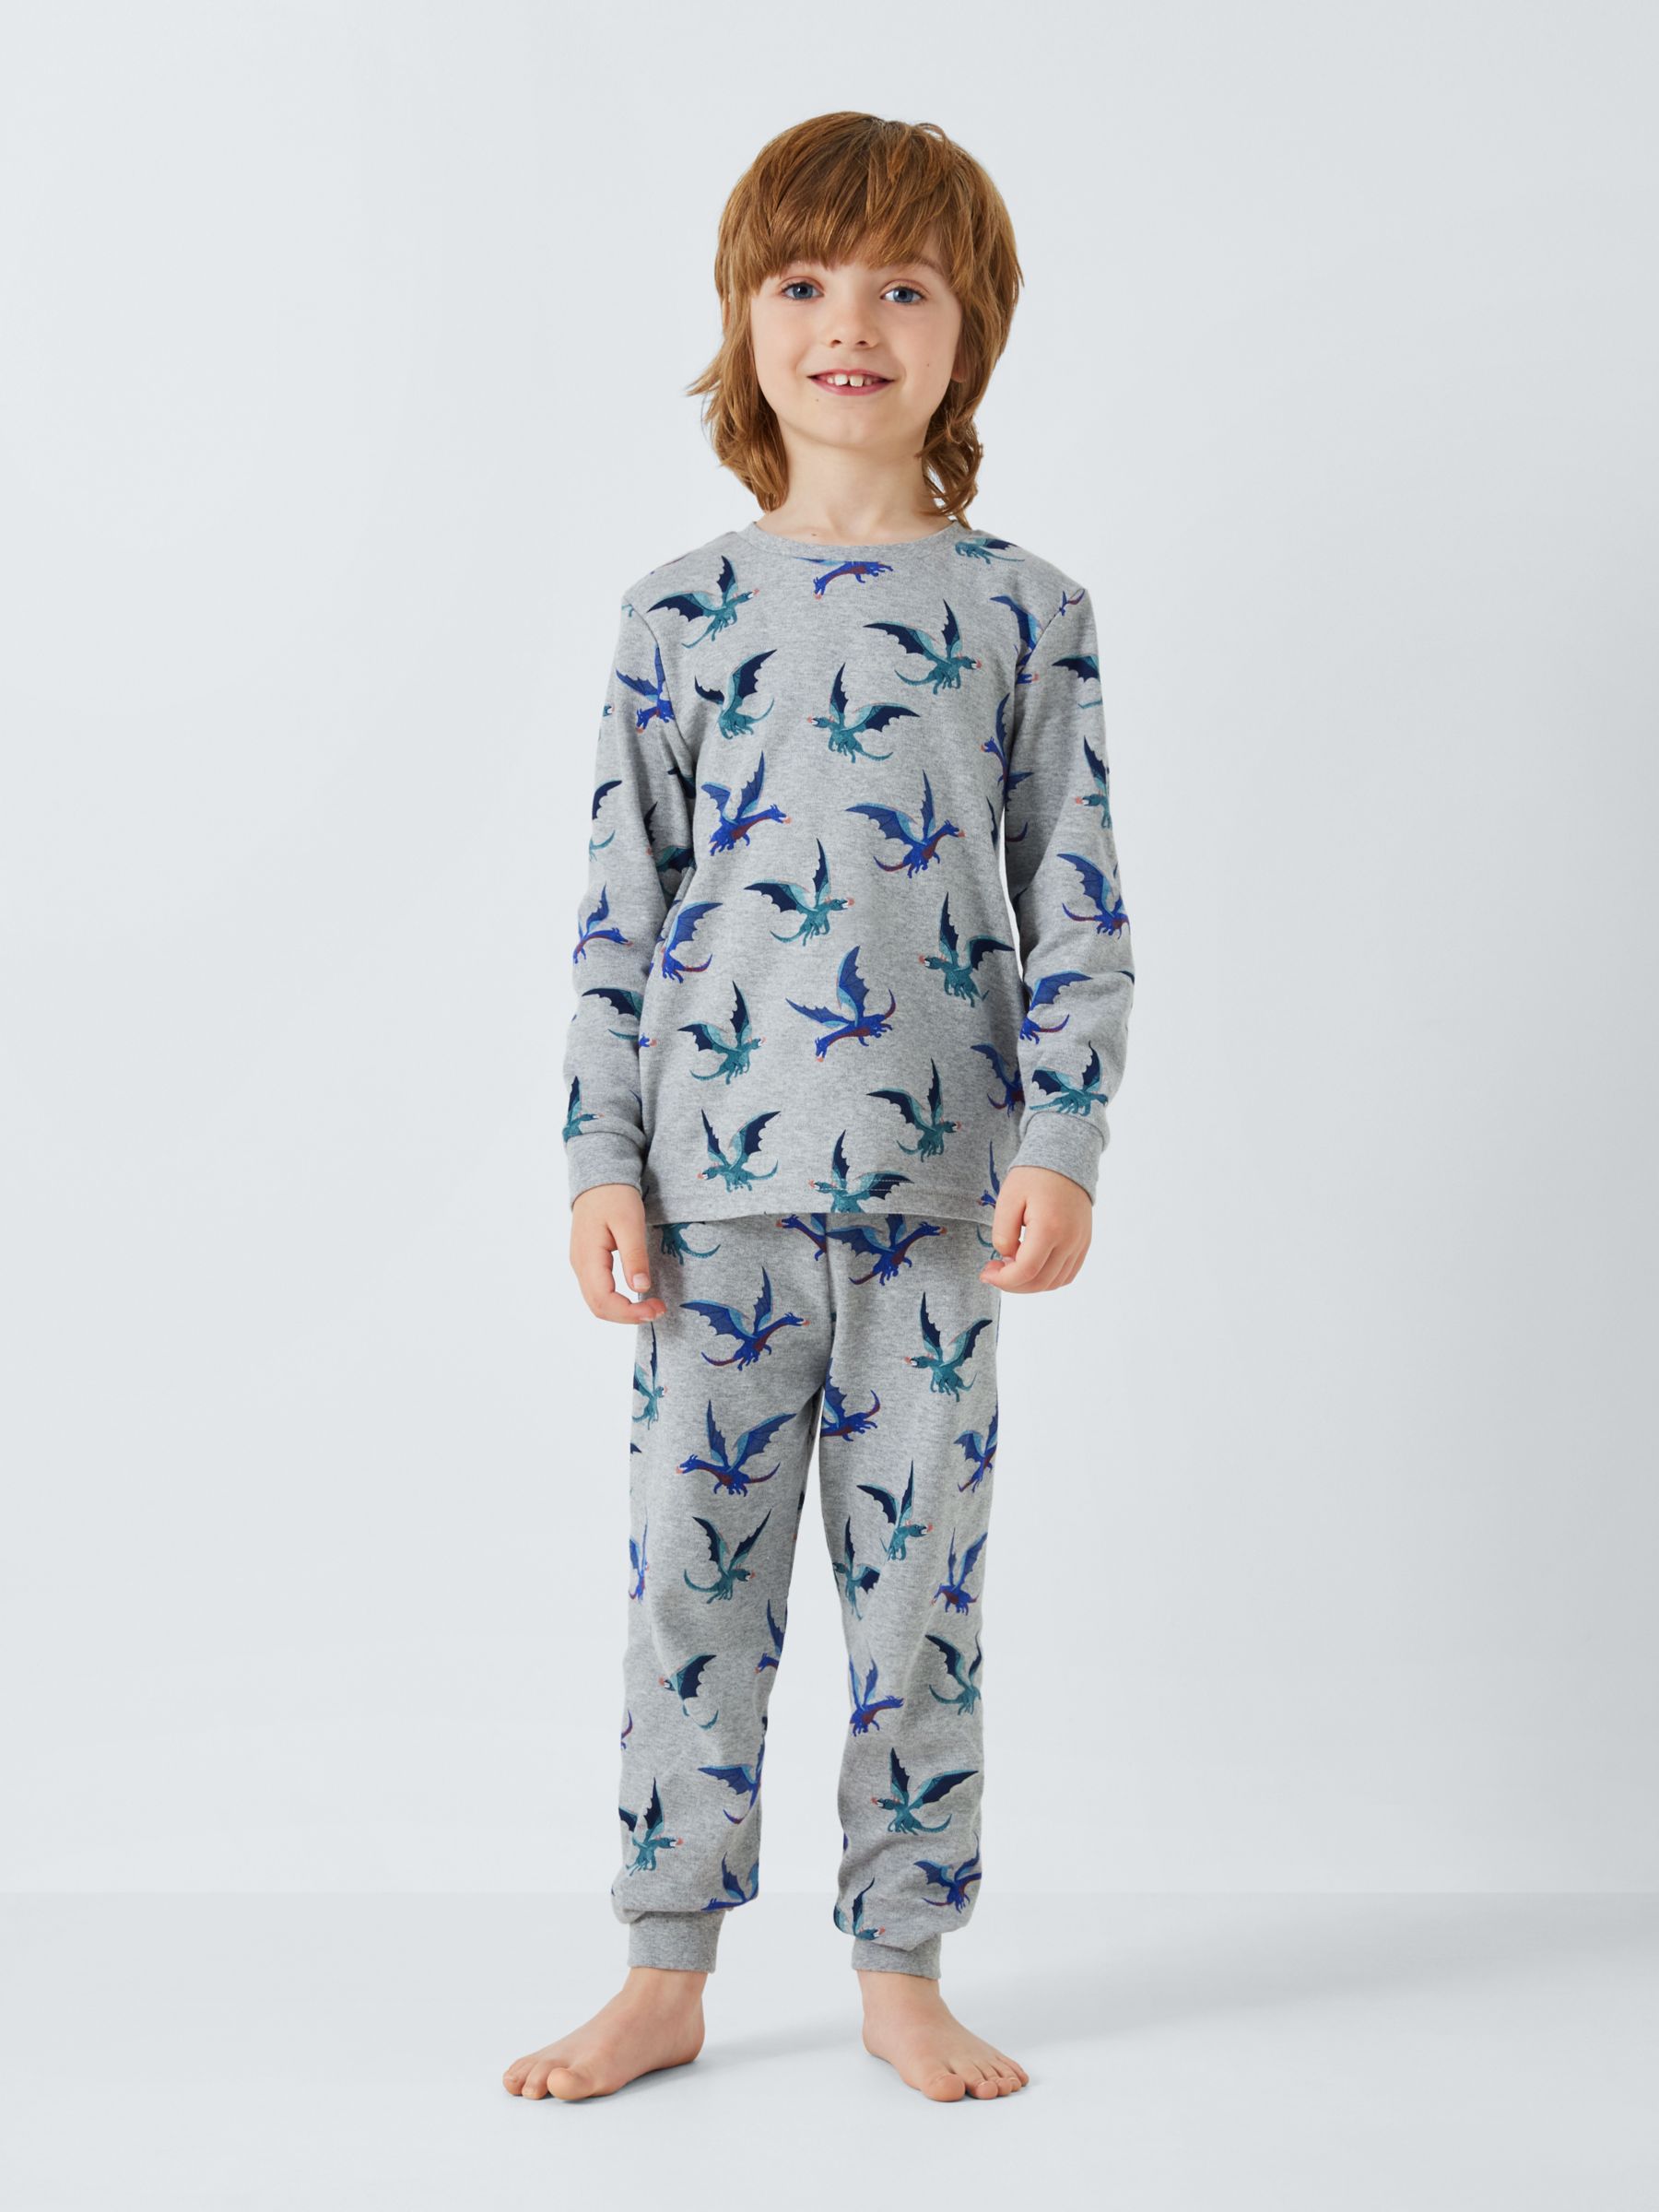 John Lewis Kids' Fiery Dragon Pyjamas, Pack of 2, Multi, 7 years